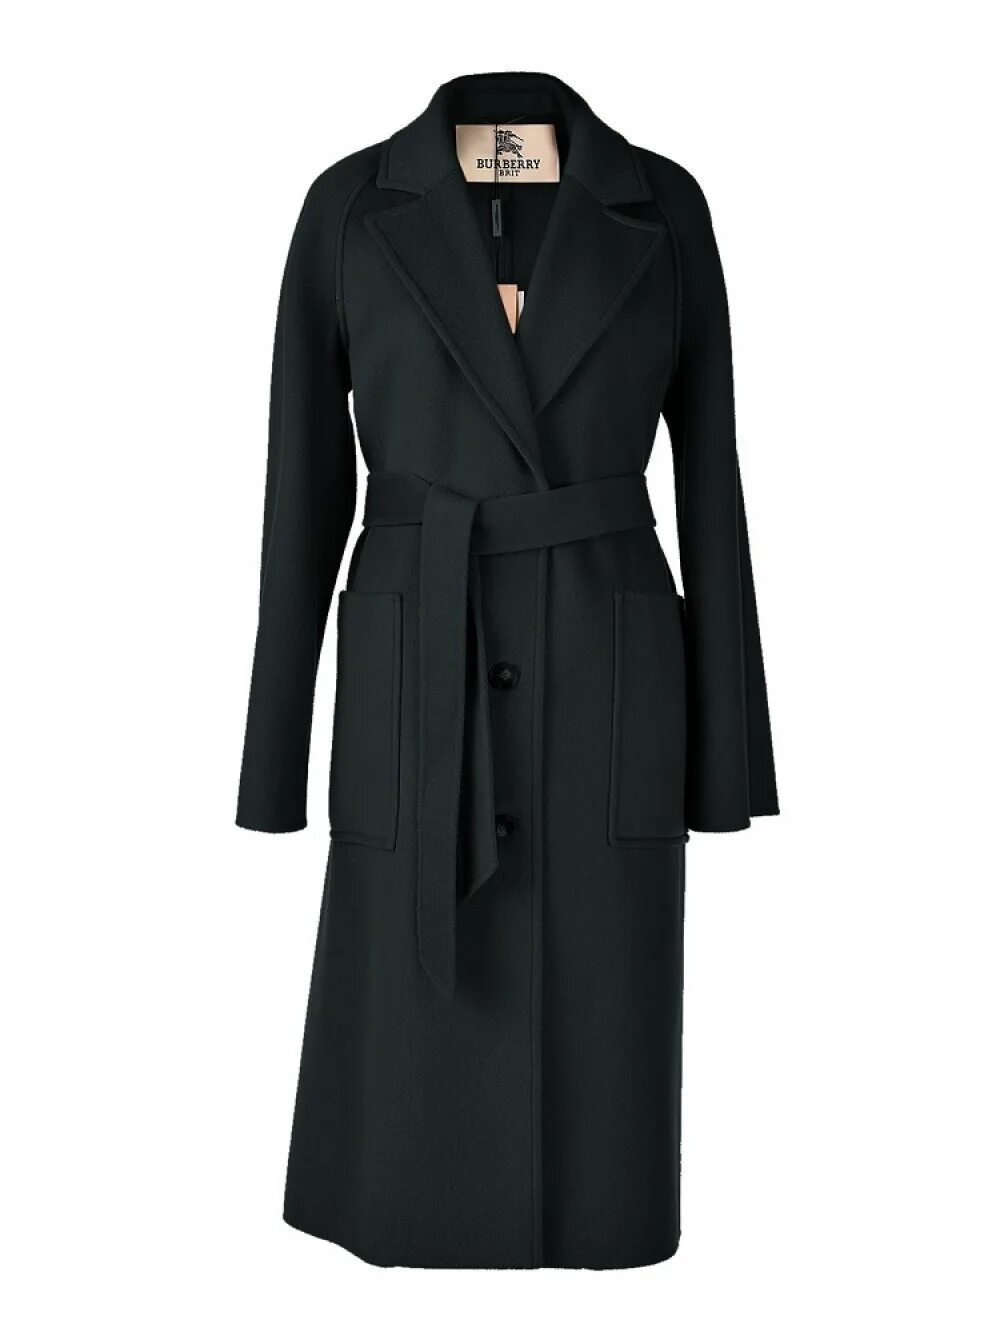 Пальто Барбери женское кашемир. Burberry пальто женское кашемировое. Пальто Burberry BMS-47213. Burberry пальто женское 2022.